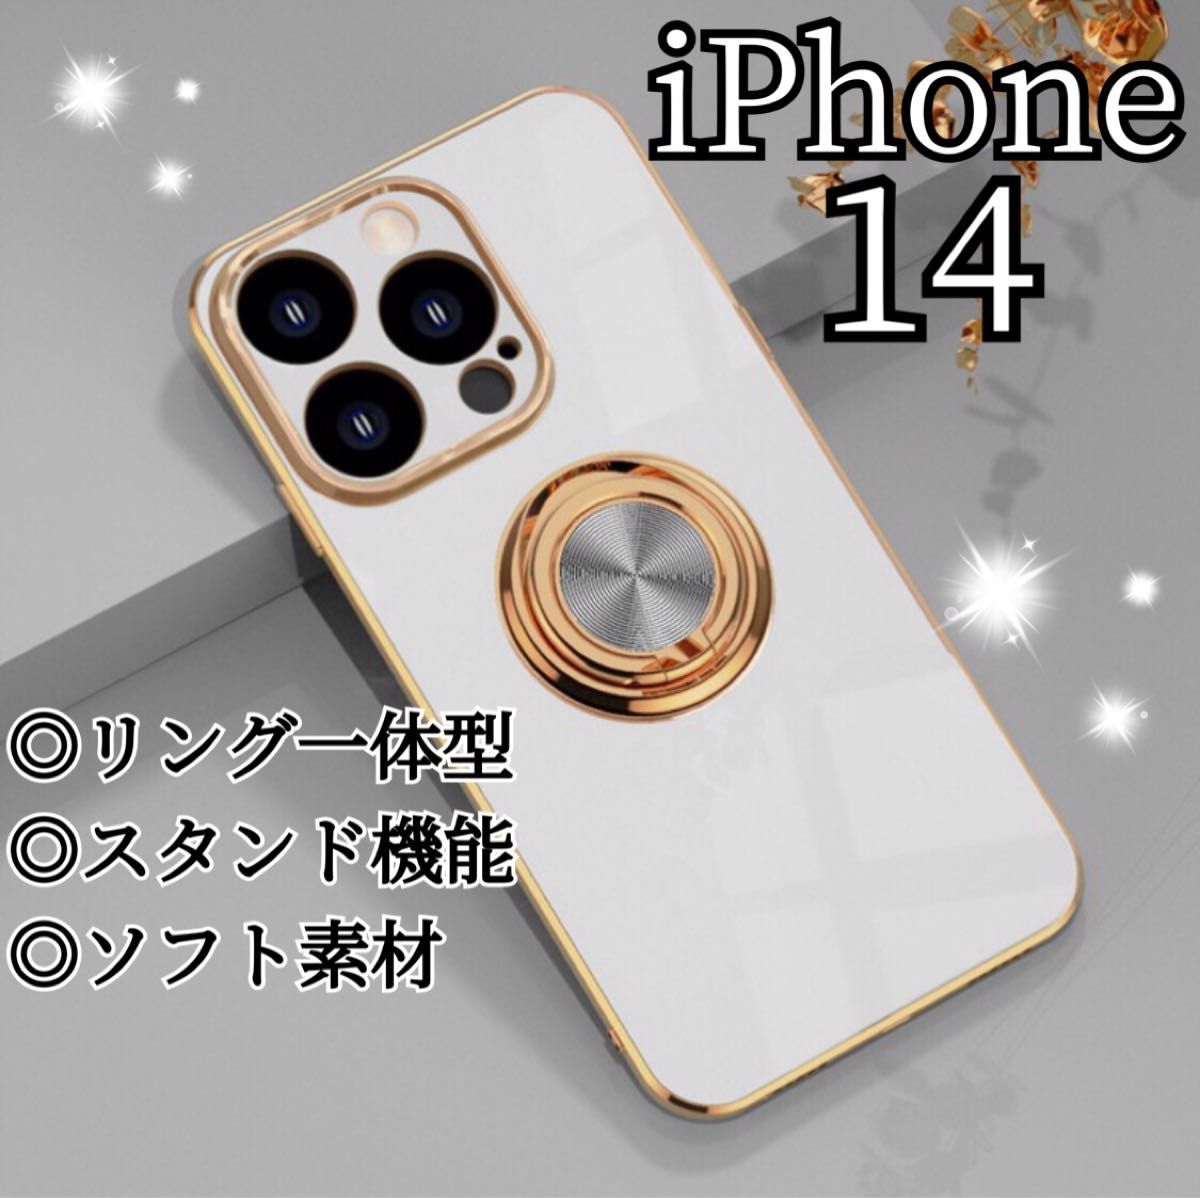 リング付き iPhone ケース iPhone14 ホワイト 高級感 韓国 白 ゴールド ストラップホール おしゃれ